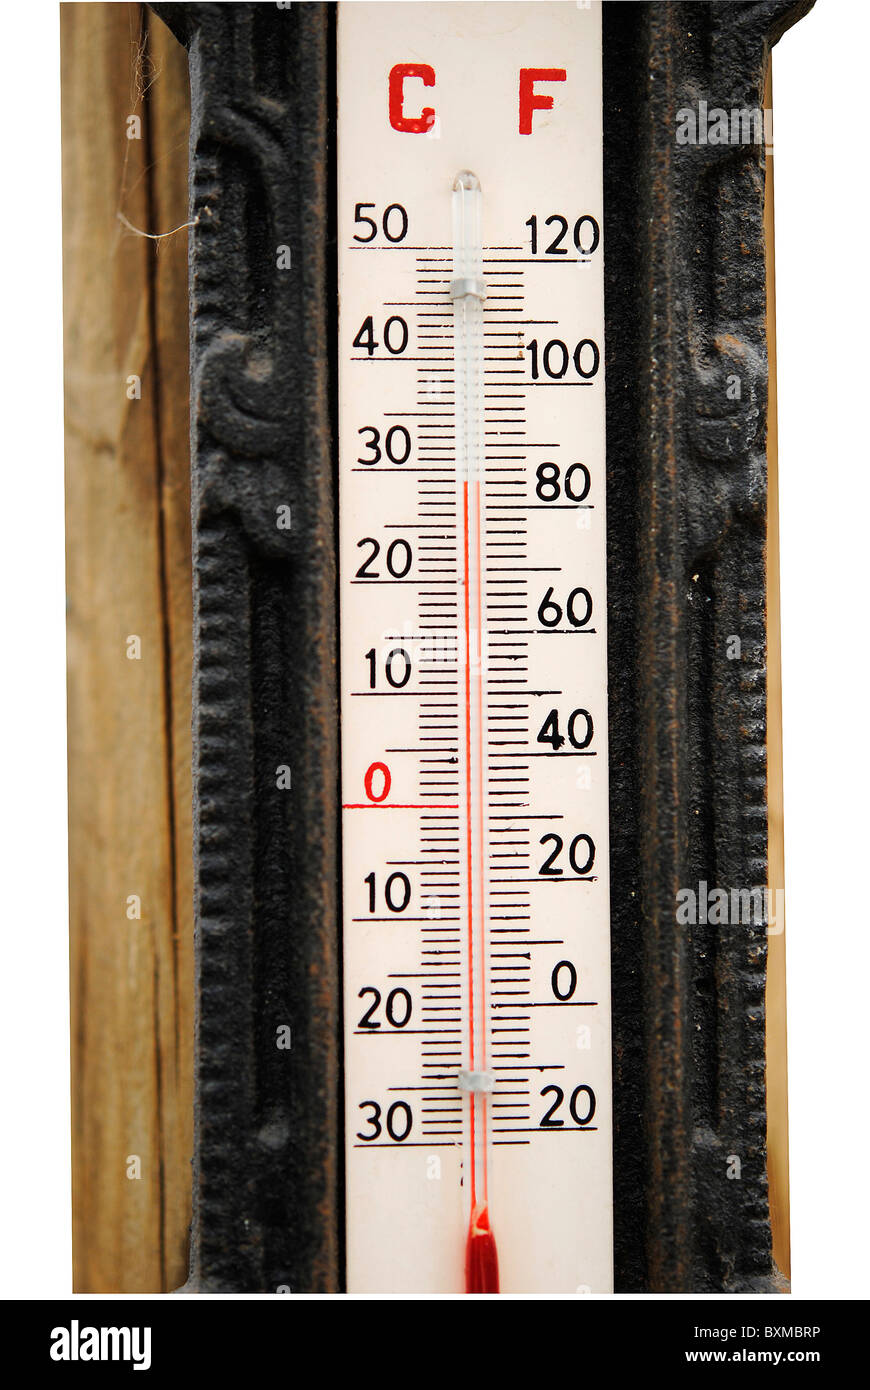 Termometro per misurare la temperatura ambiente in centigradi, gradi e F  Foto stock - Alamy